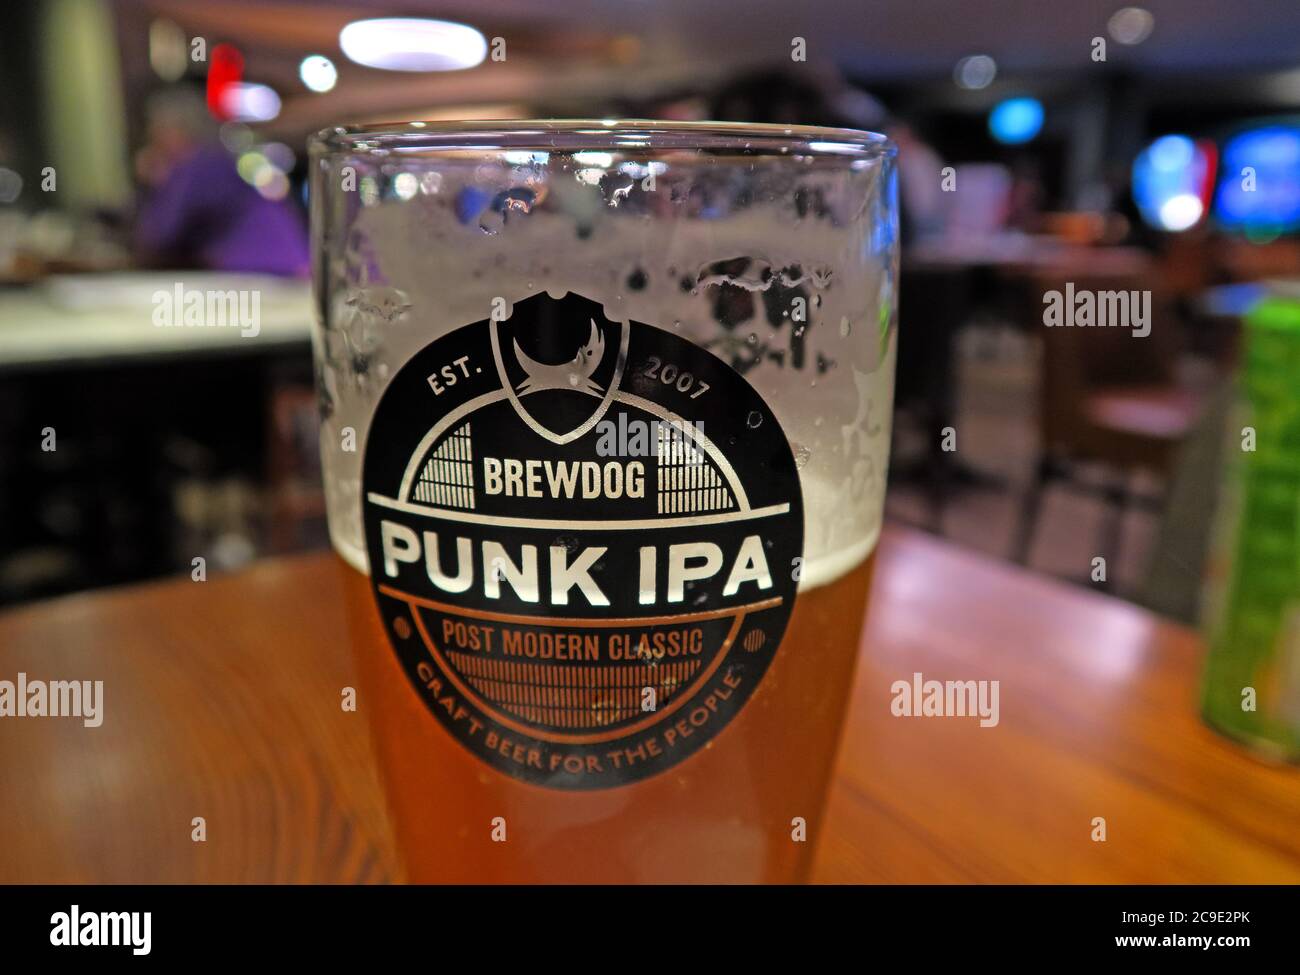 Verre de Brewdog, verre de Punk IPA, Wetherspoon Pub, bière bon marché, pinte bon marché, Brewing de Brewdog - verre à moitié plein Banque D'Images